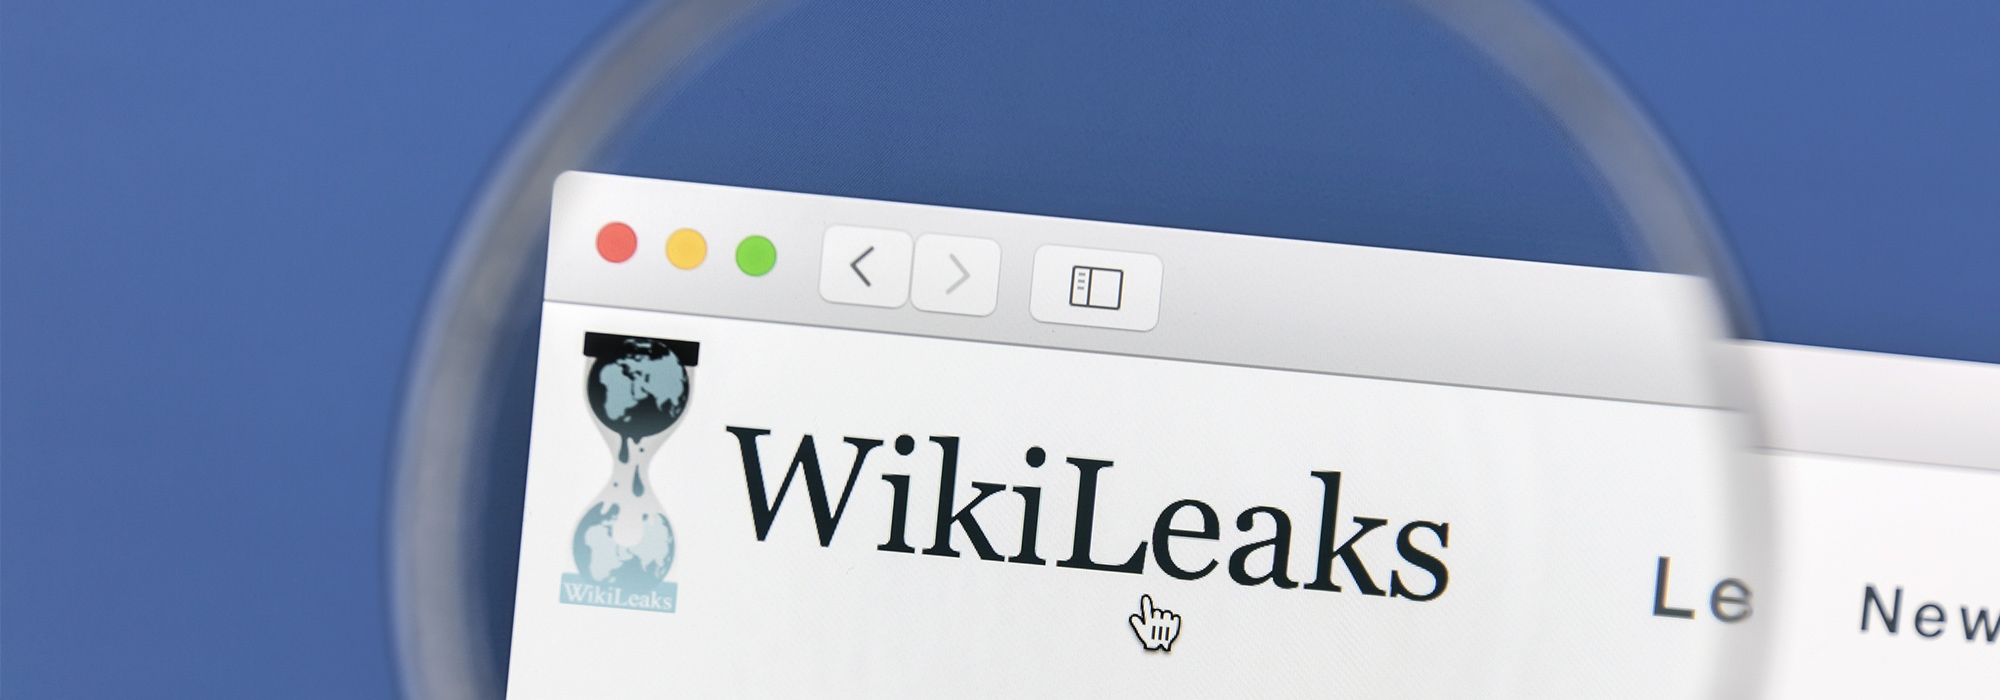 Patiesība un sekas: Wikileaks sāga